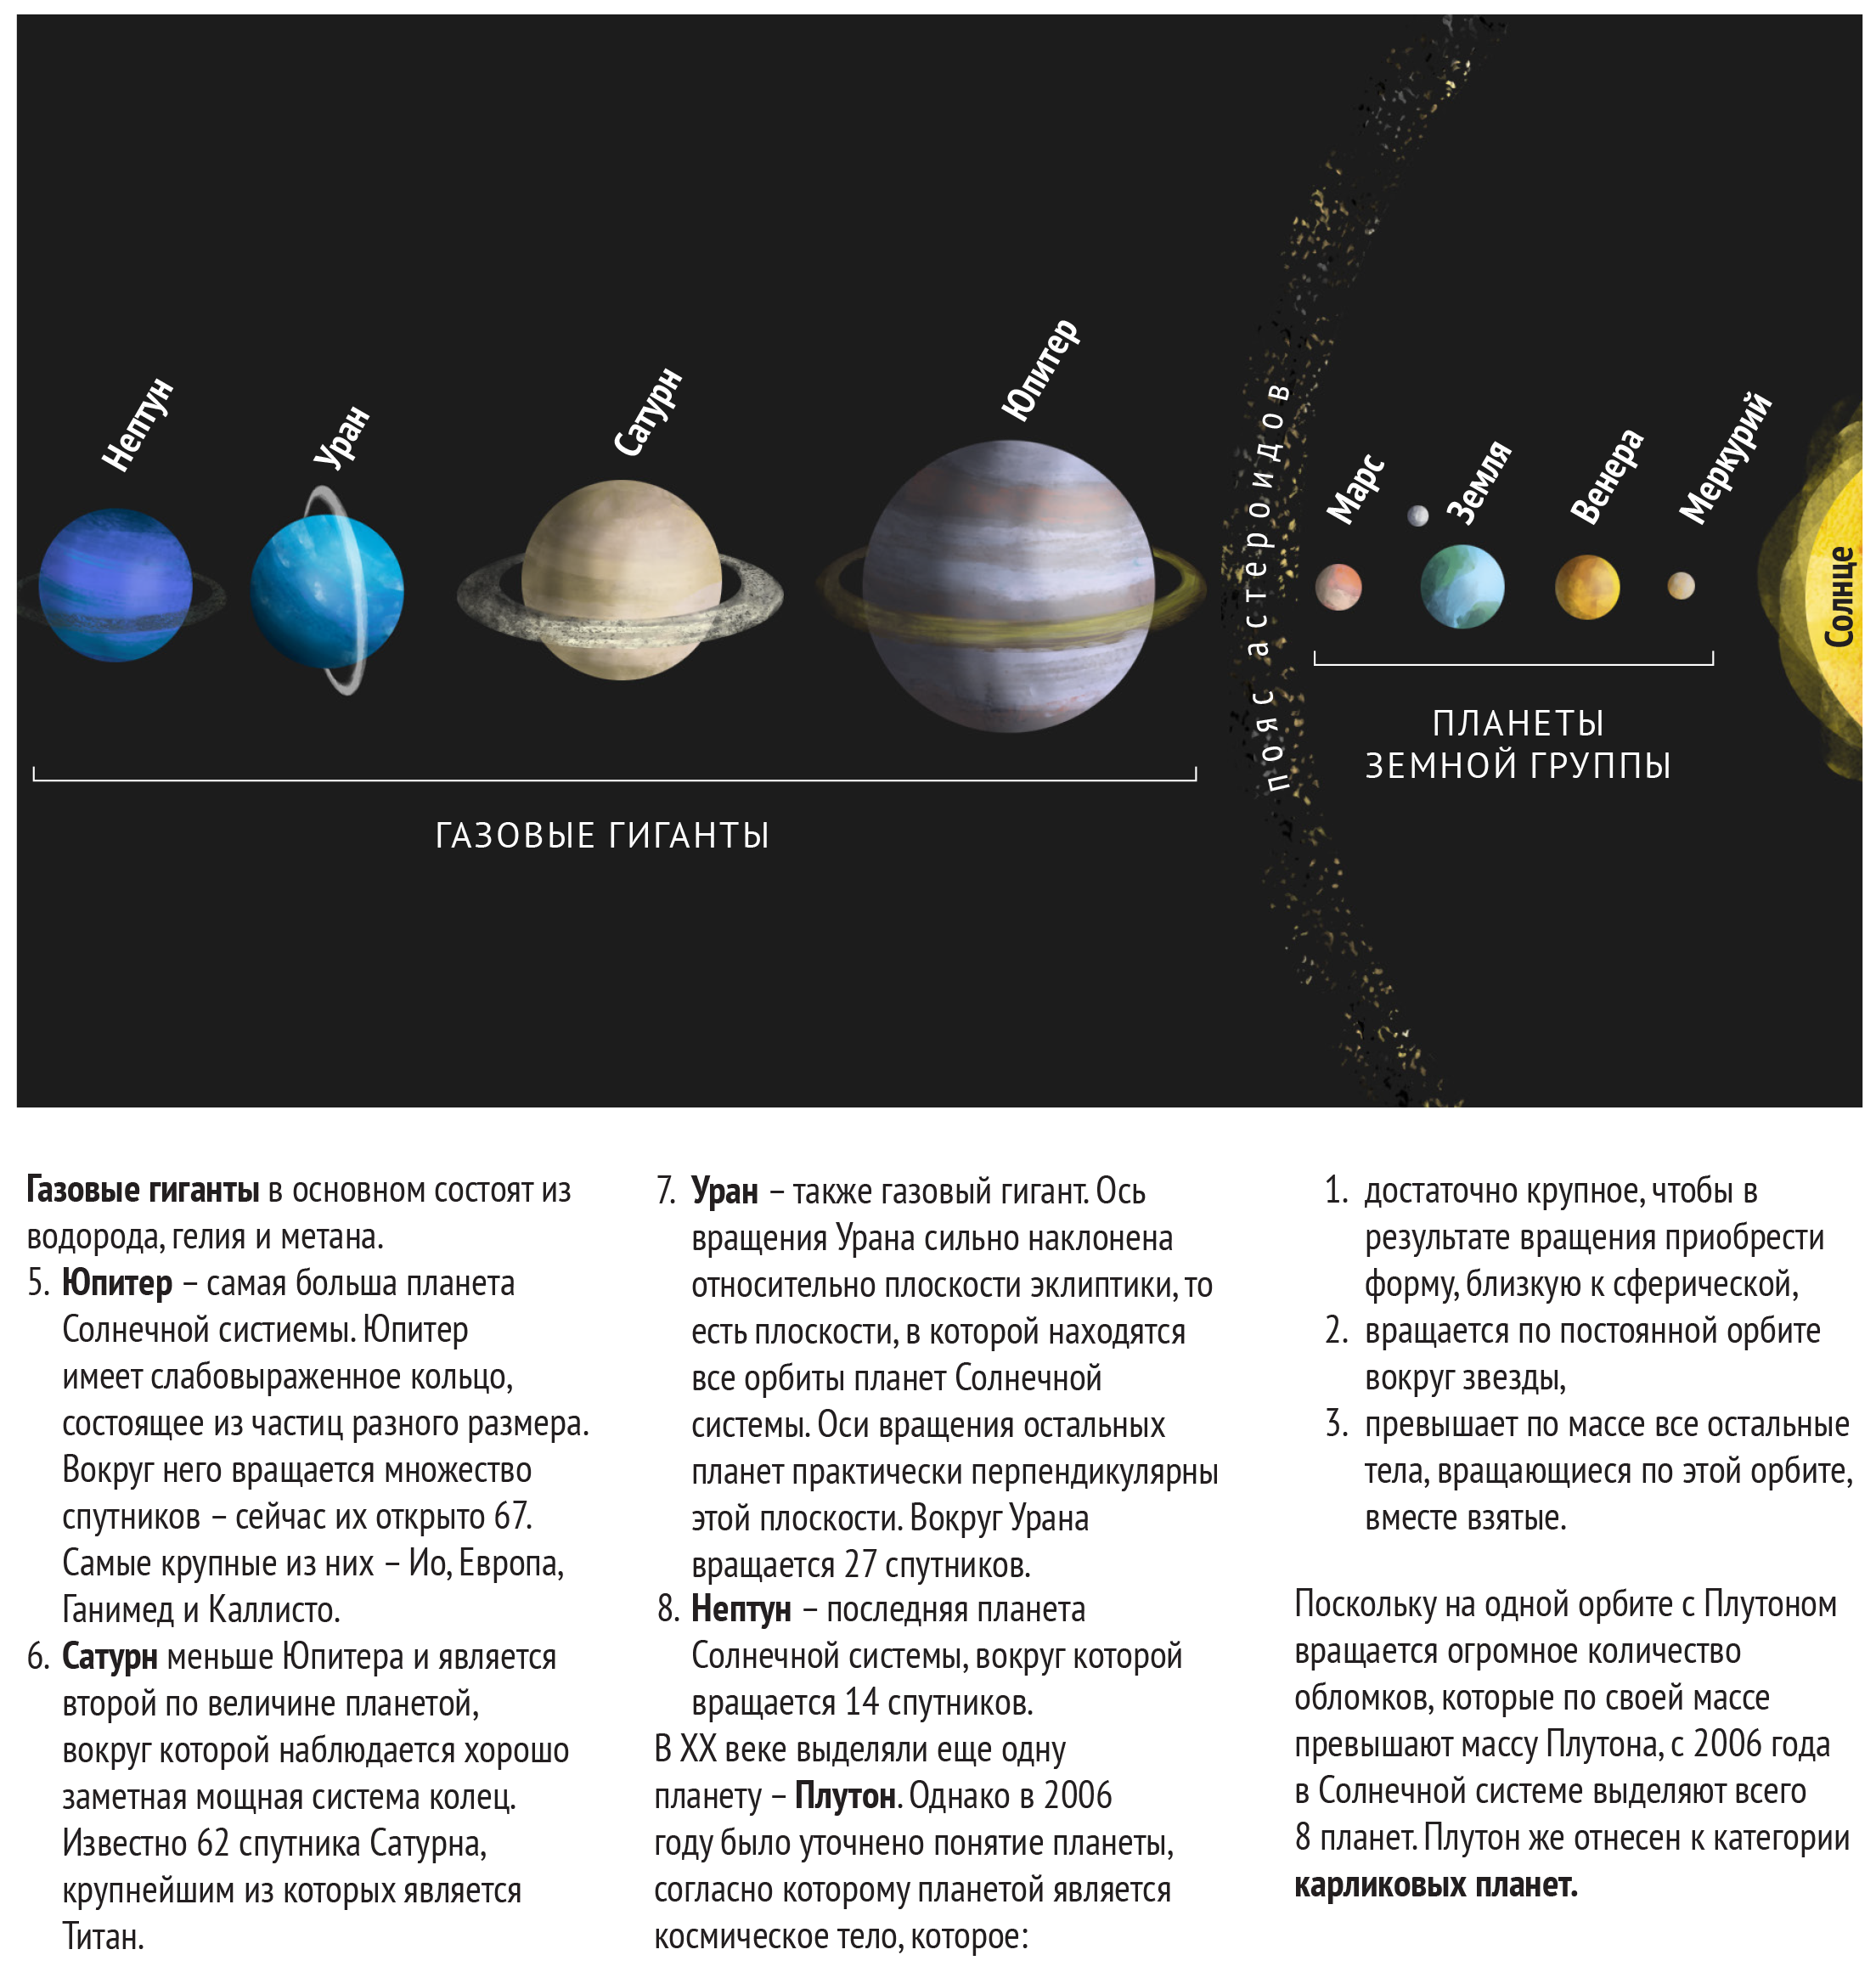 Планеты-гиганты солнечной системы(газовые планеты). Газовые гиганты в солнечной системе. Газовые планеты в солнечной системе. Название спутников планет гигантов.